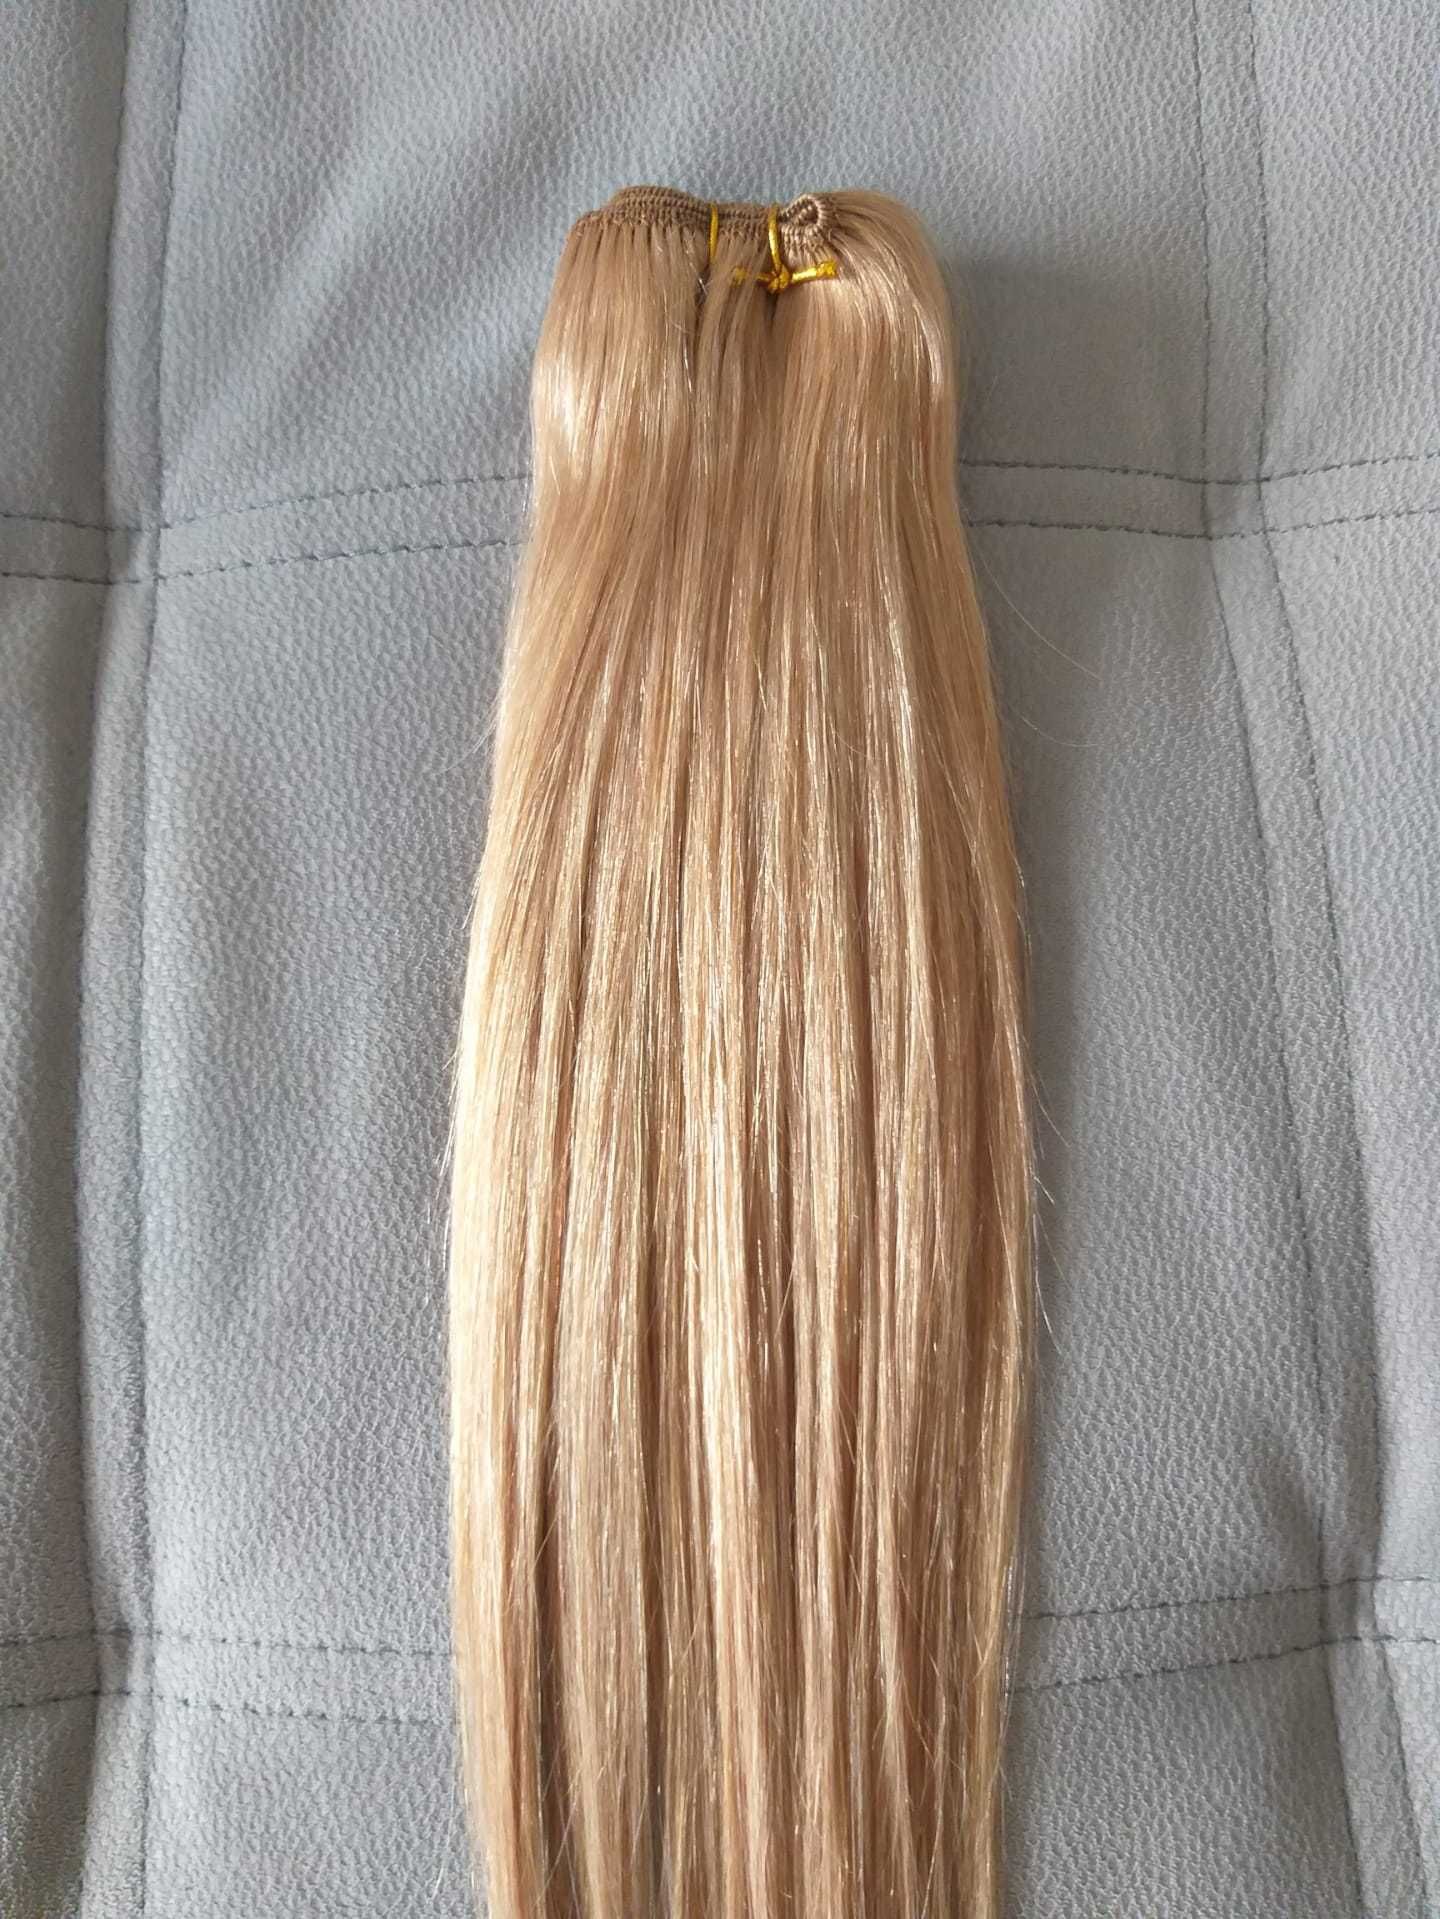 Extensões de cabelo 100% natural - em banda - 50cm, 60cm e 70cm